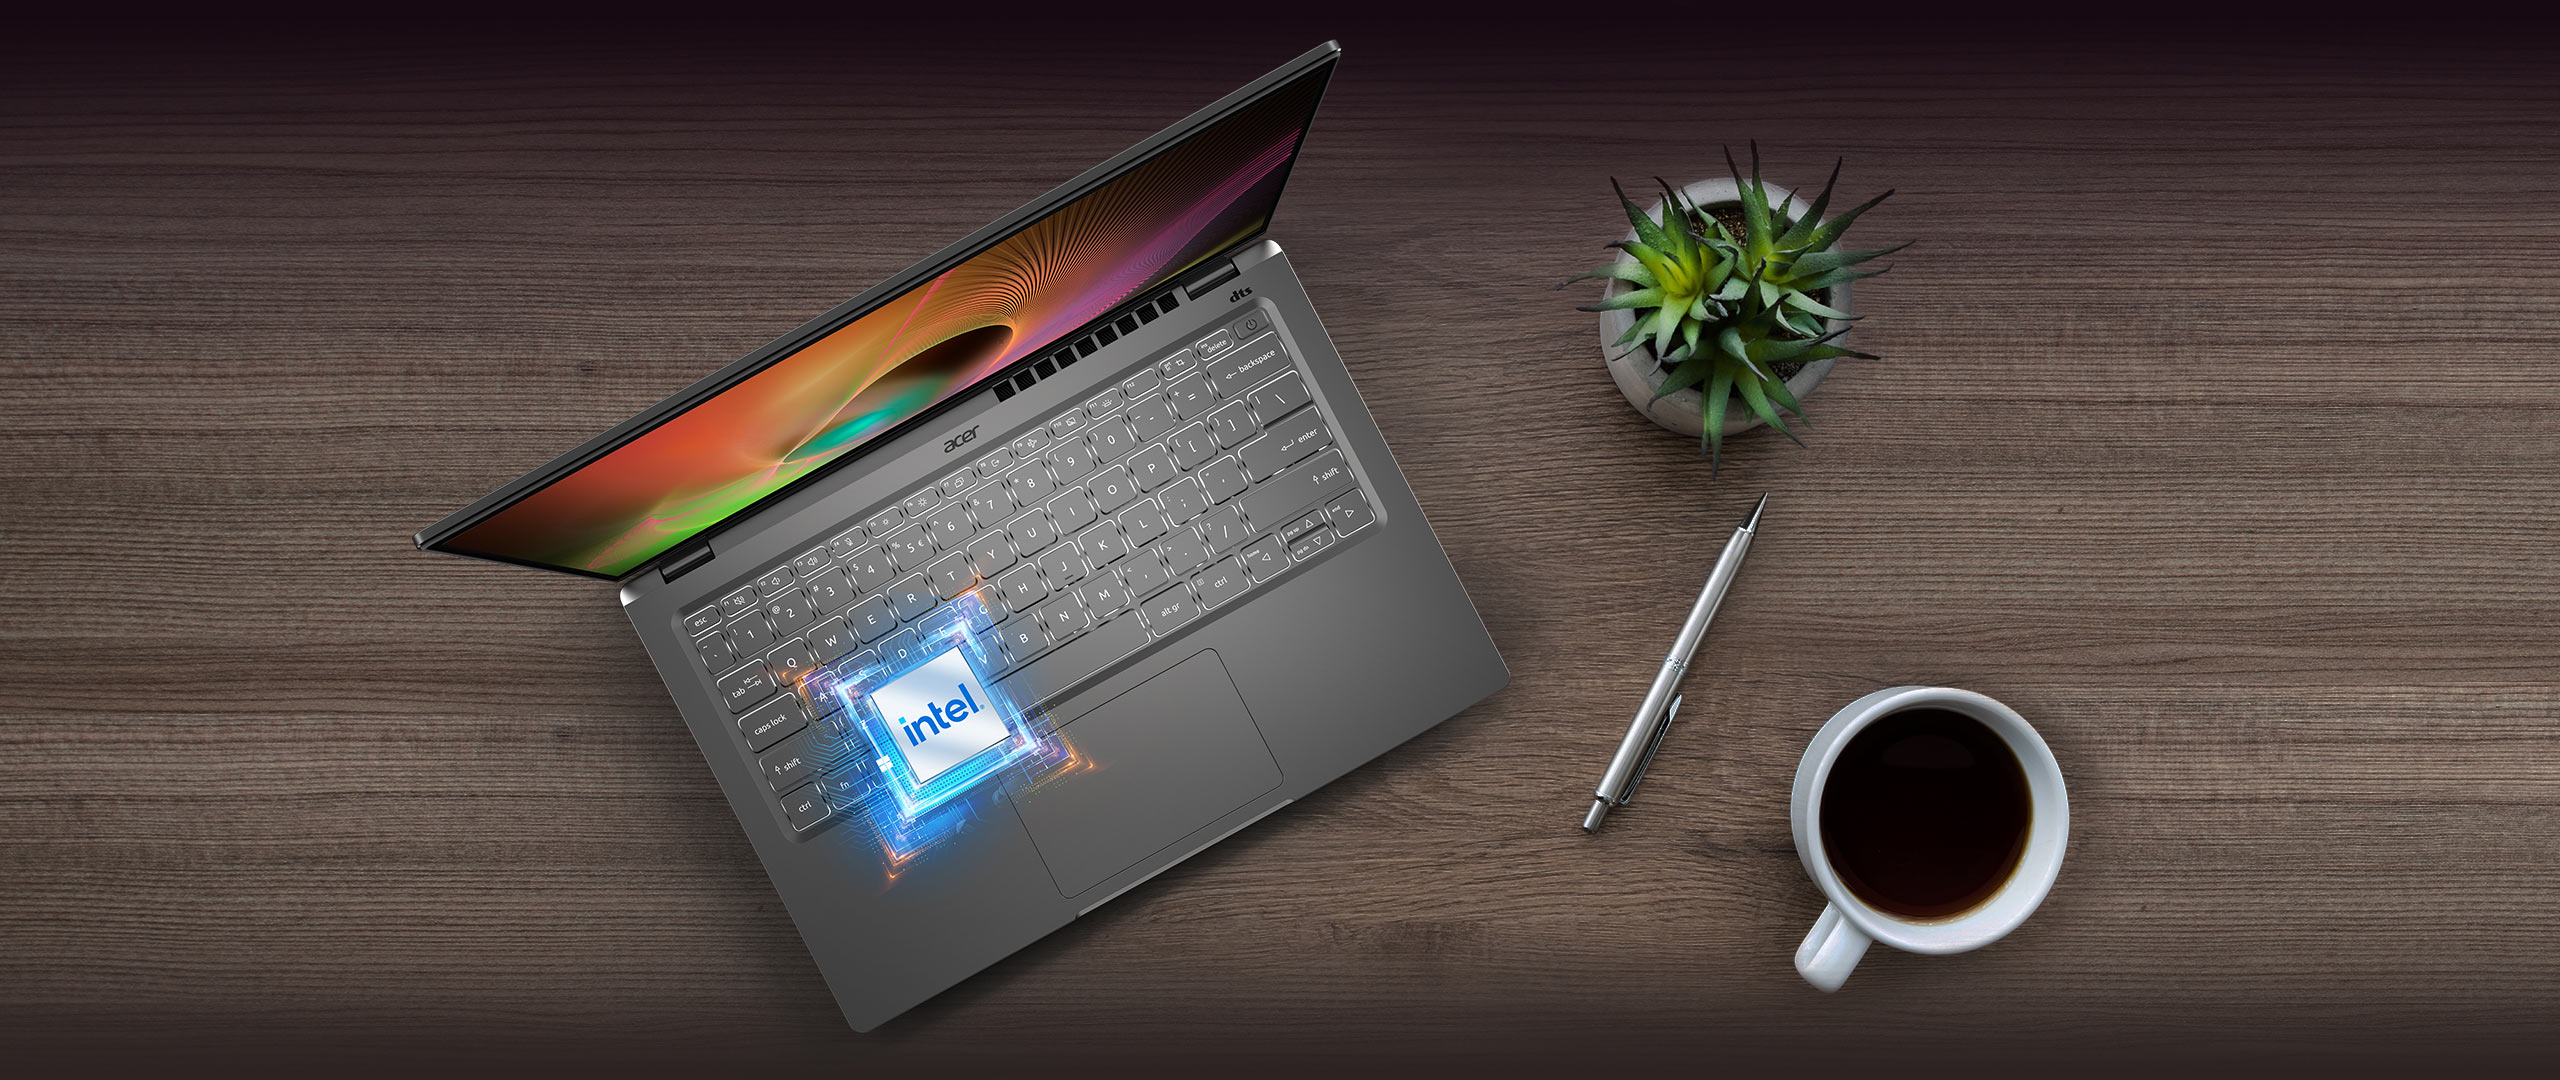 Swift 3 Super - Laptop Mỏng Nhẹ Cao Cấp Màn Hình OLED - Acer Việt Nam |  Website Chính Thức